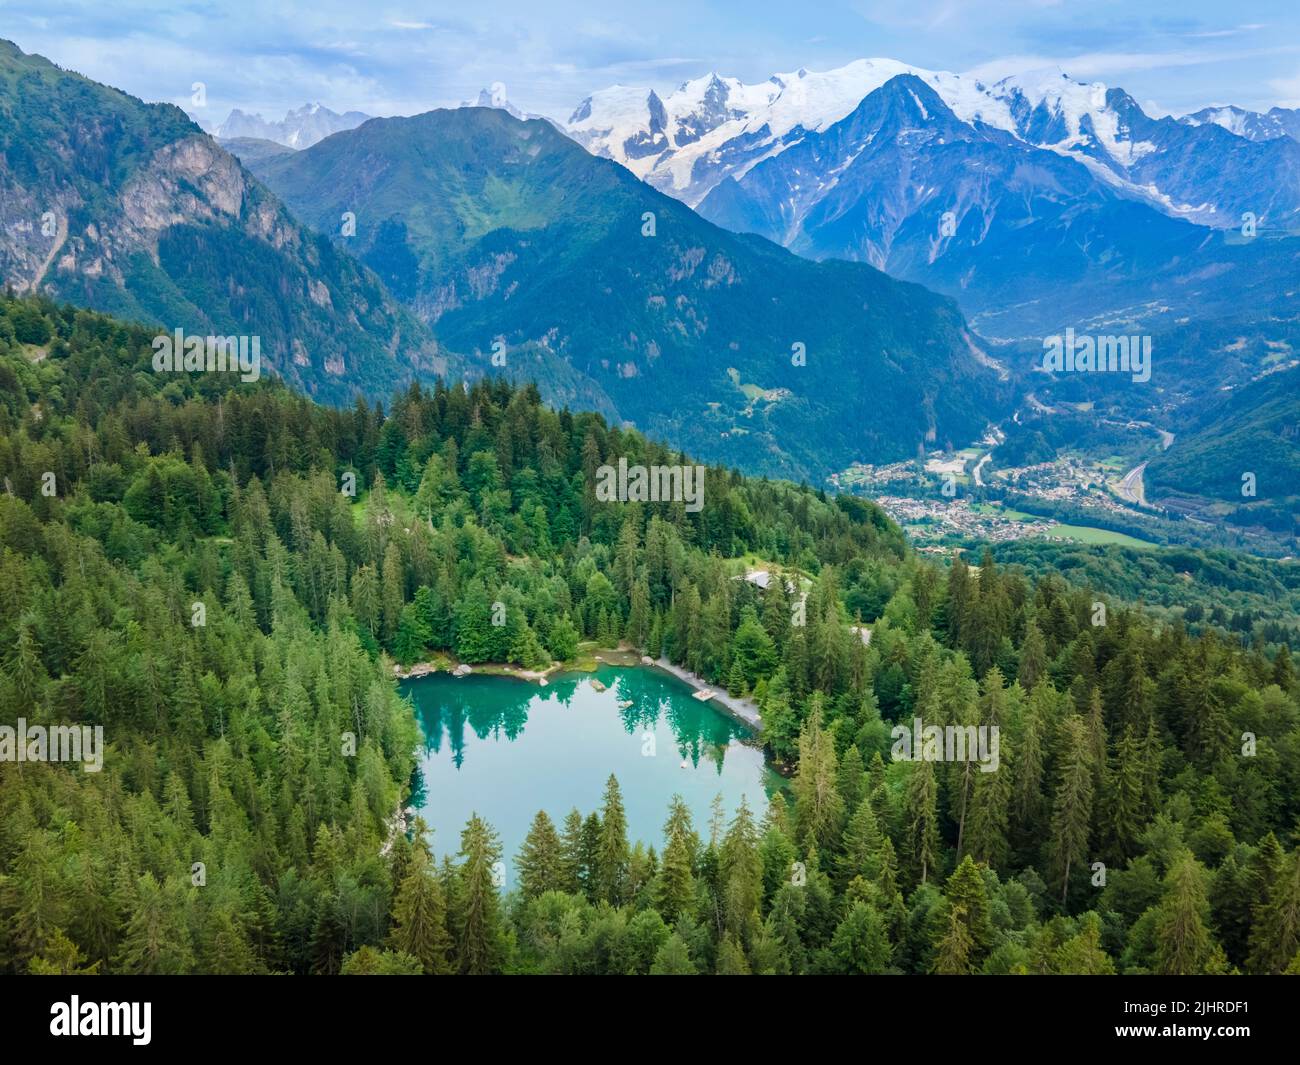 Vista del Mont Blanc y el Lac Vert en las montañas de los Alpes cerca de Chamonix, Francia. Verano paisaje alpino francés con bosque de abetos, lago y verde valle. Foto de stock